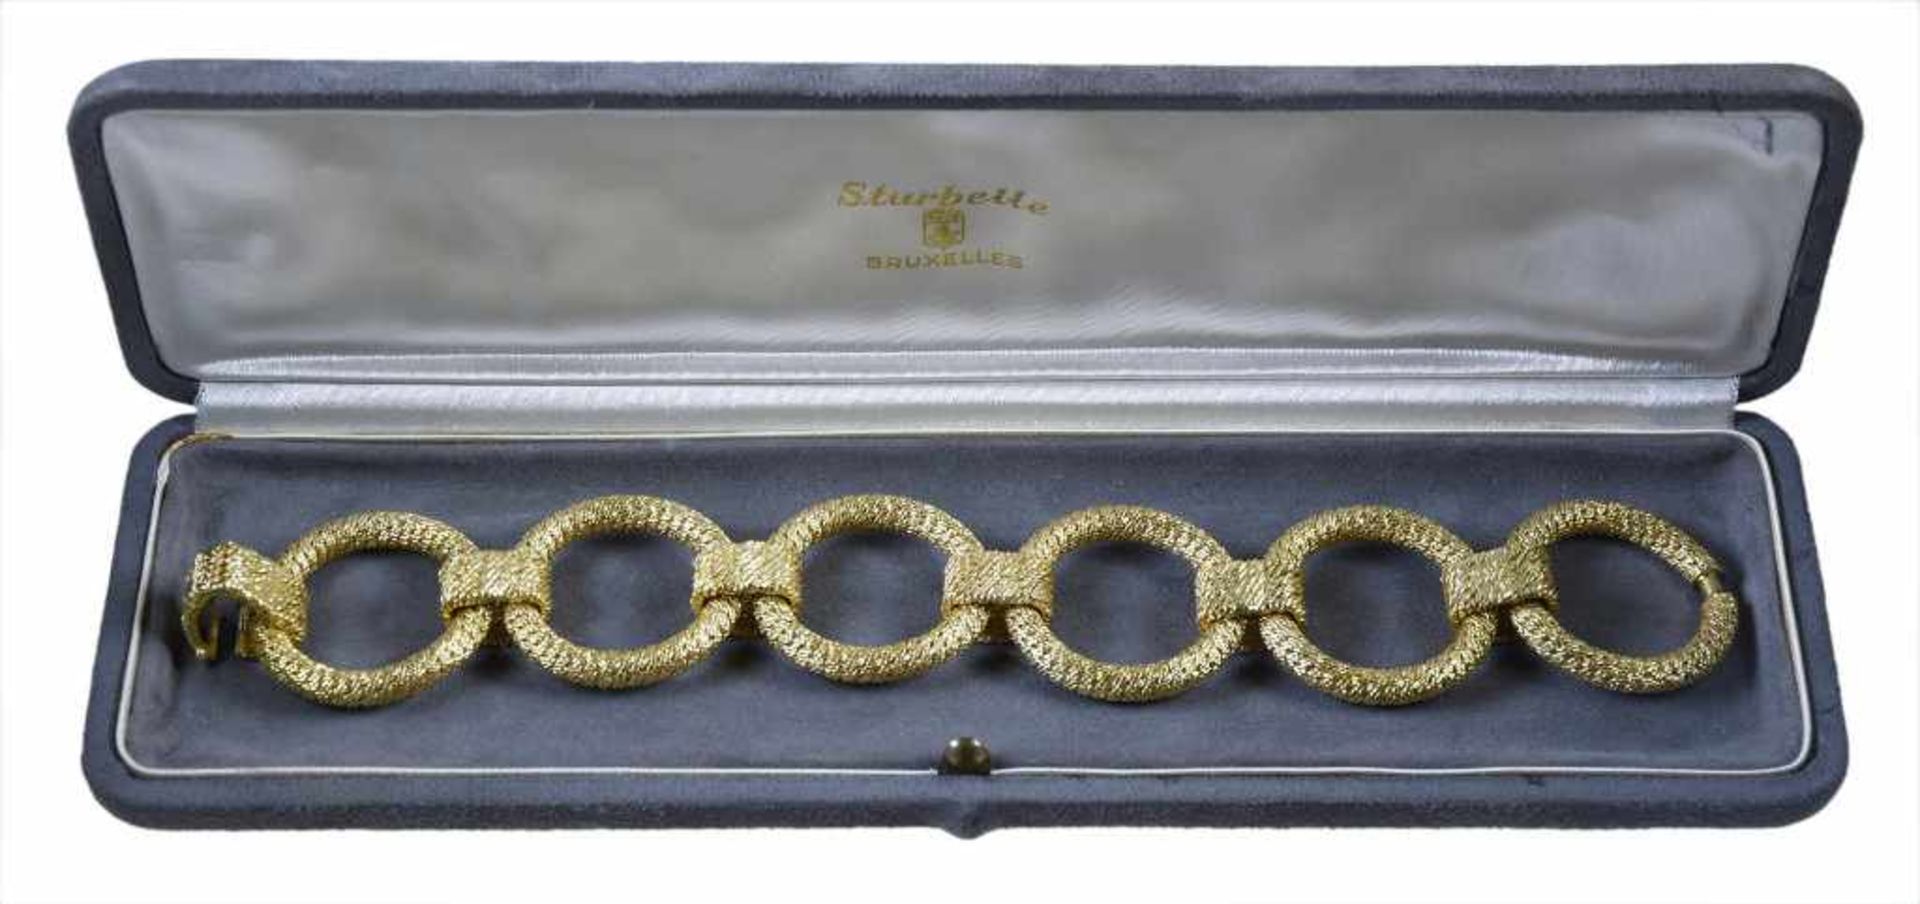 Sturbelle - Bracelet - 18 Kt yellow gold En or jaune 18 ct, composé de 6 maillons ronds en or tressé